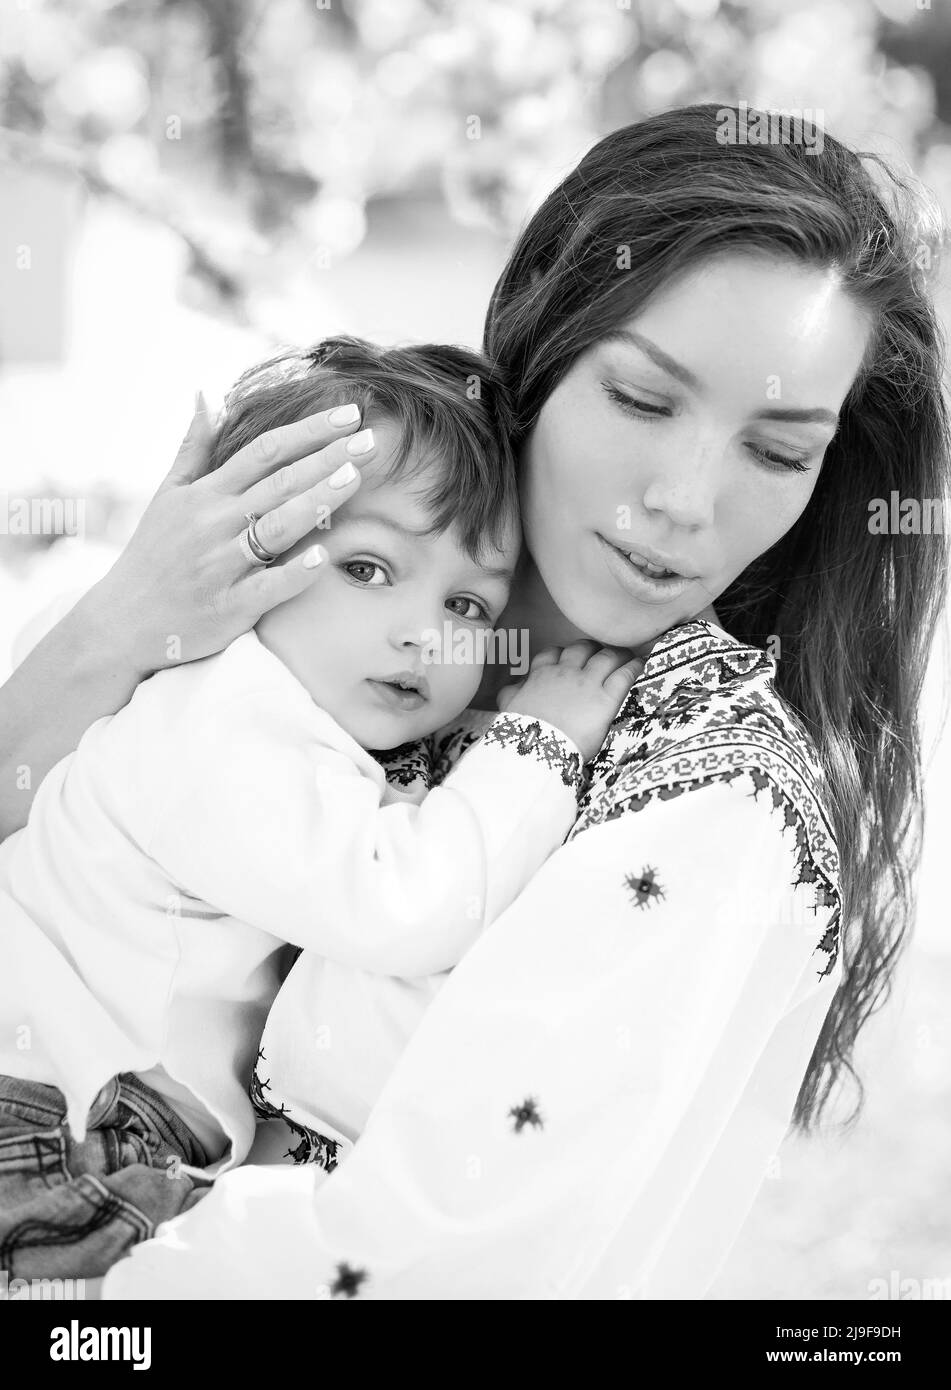 Schwarz-Weiß-Foto kleines Baby auf den Händen der Mutter. Porträt einer Familie von zwei Personen. Frühling Landschaft Hintergrund. Stockfoto